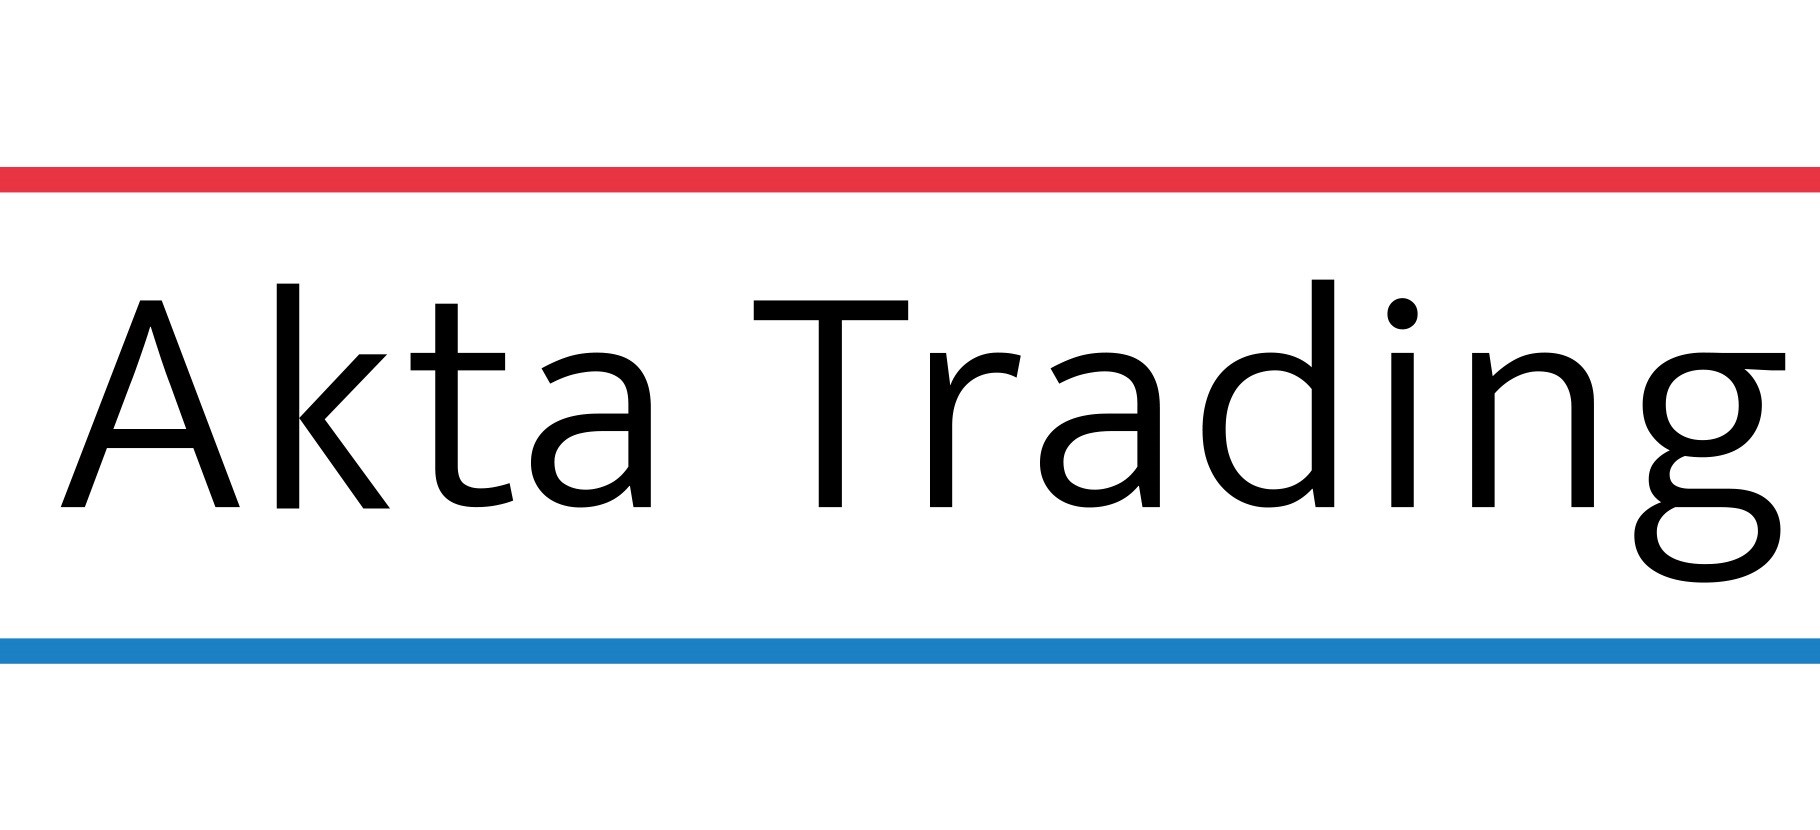 akta-logo-1820-x-830